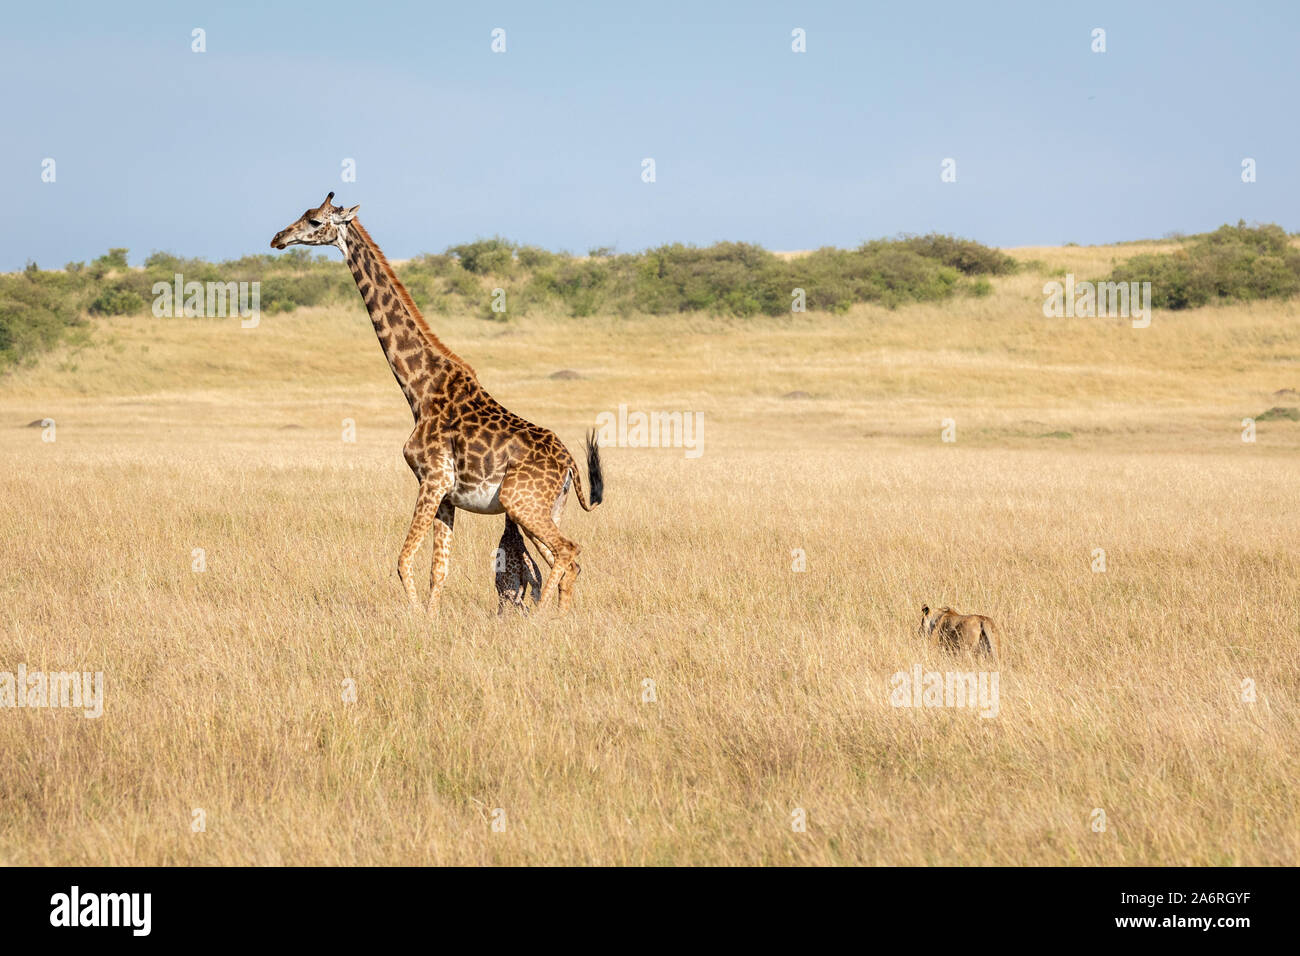 Masai Mara, Kenia, Afrika: Eine Löwin Ansätze das Paar. HEARTBREAKING Bilder zeigen eine Mutter giraffe versehentlich den Hals brechen ihr neugeborenes Kalb wi Stockfoto